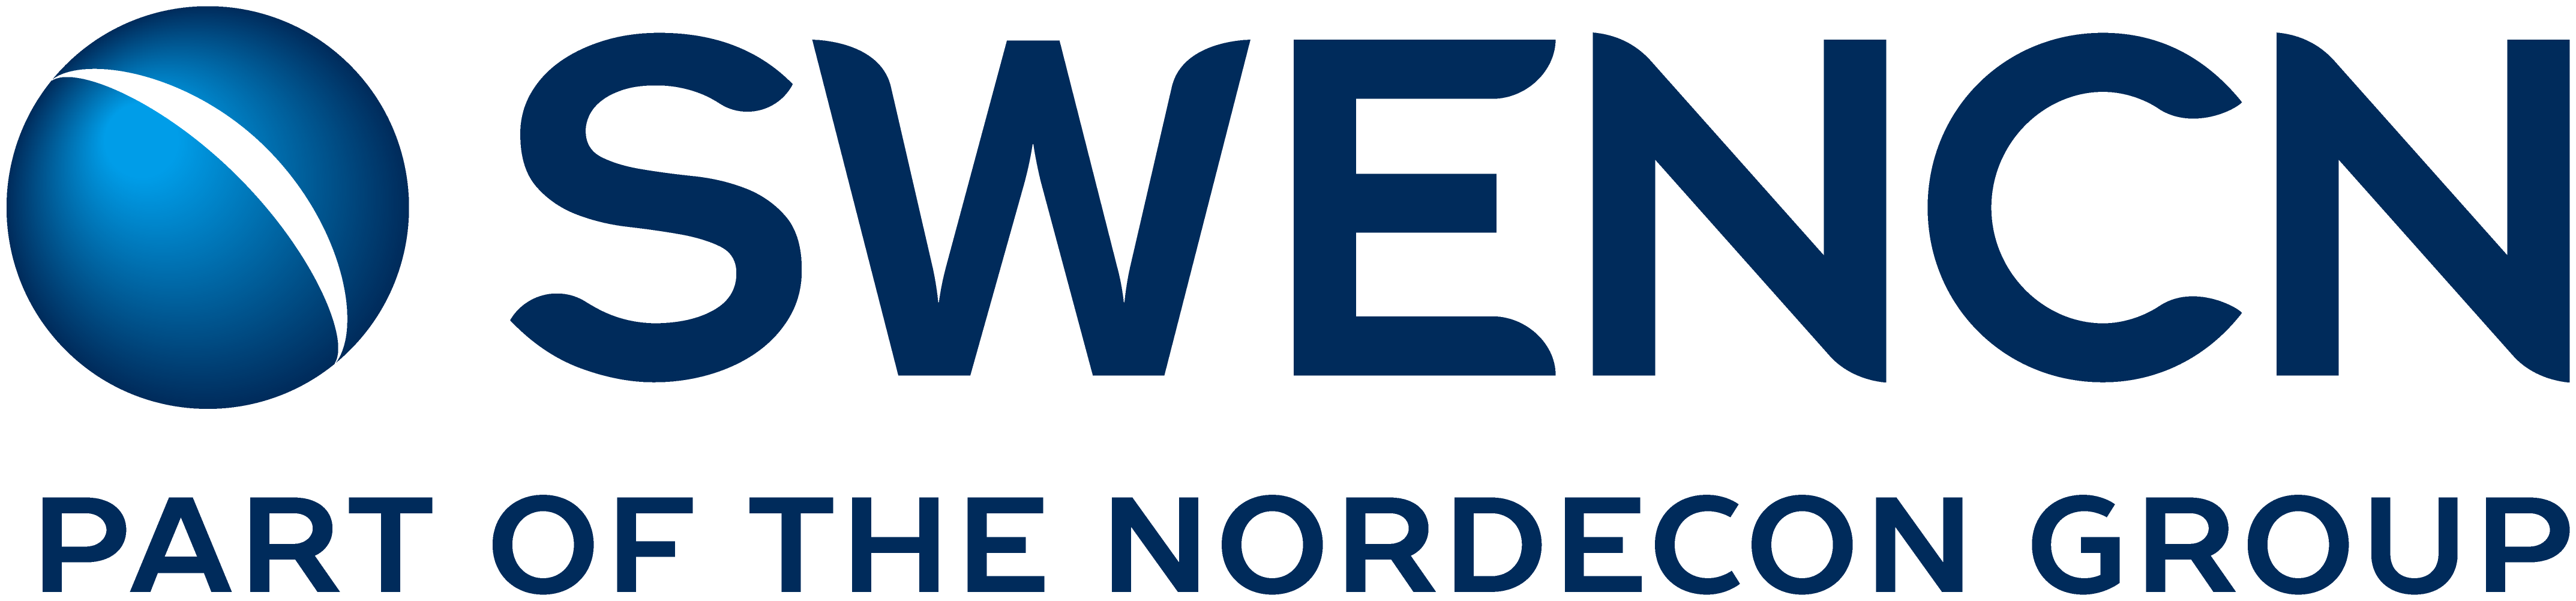 sweNCN logo